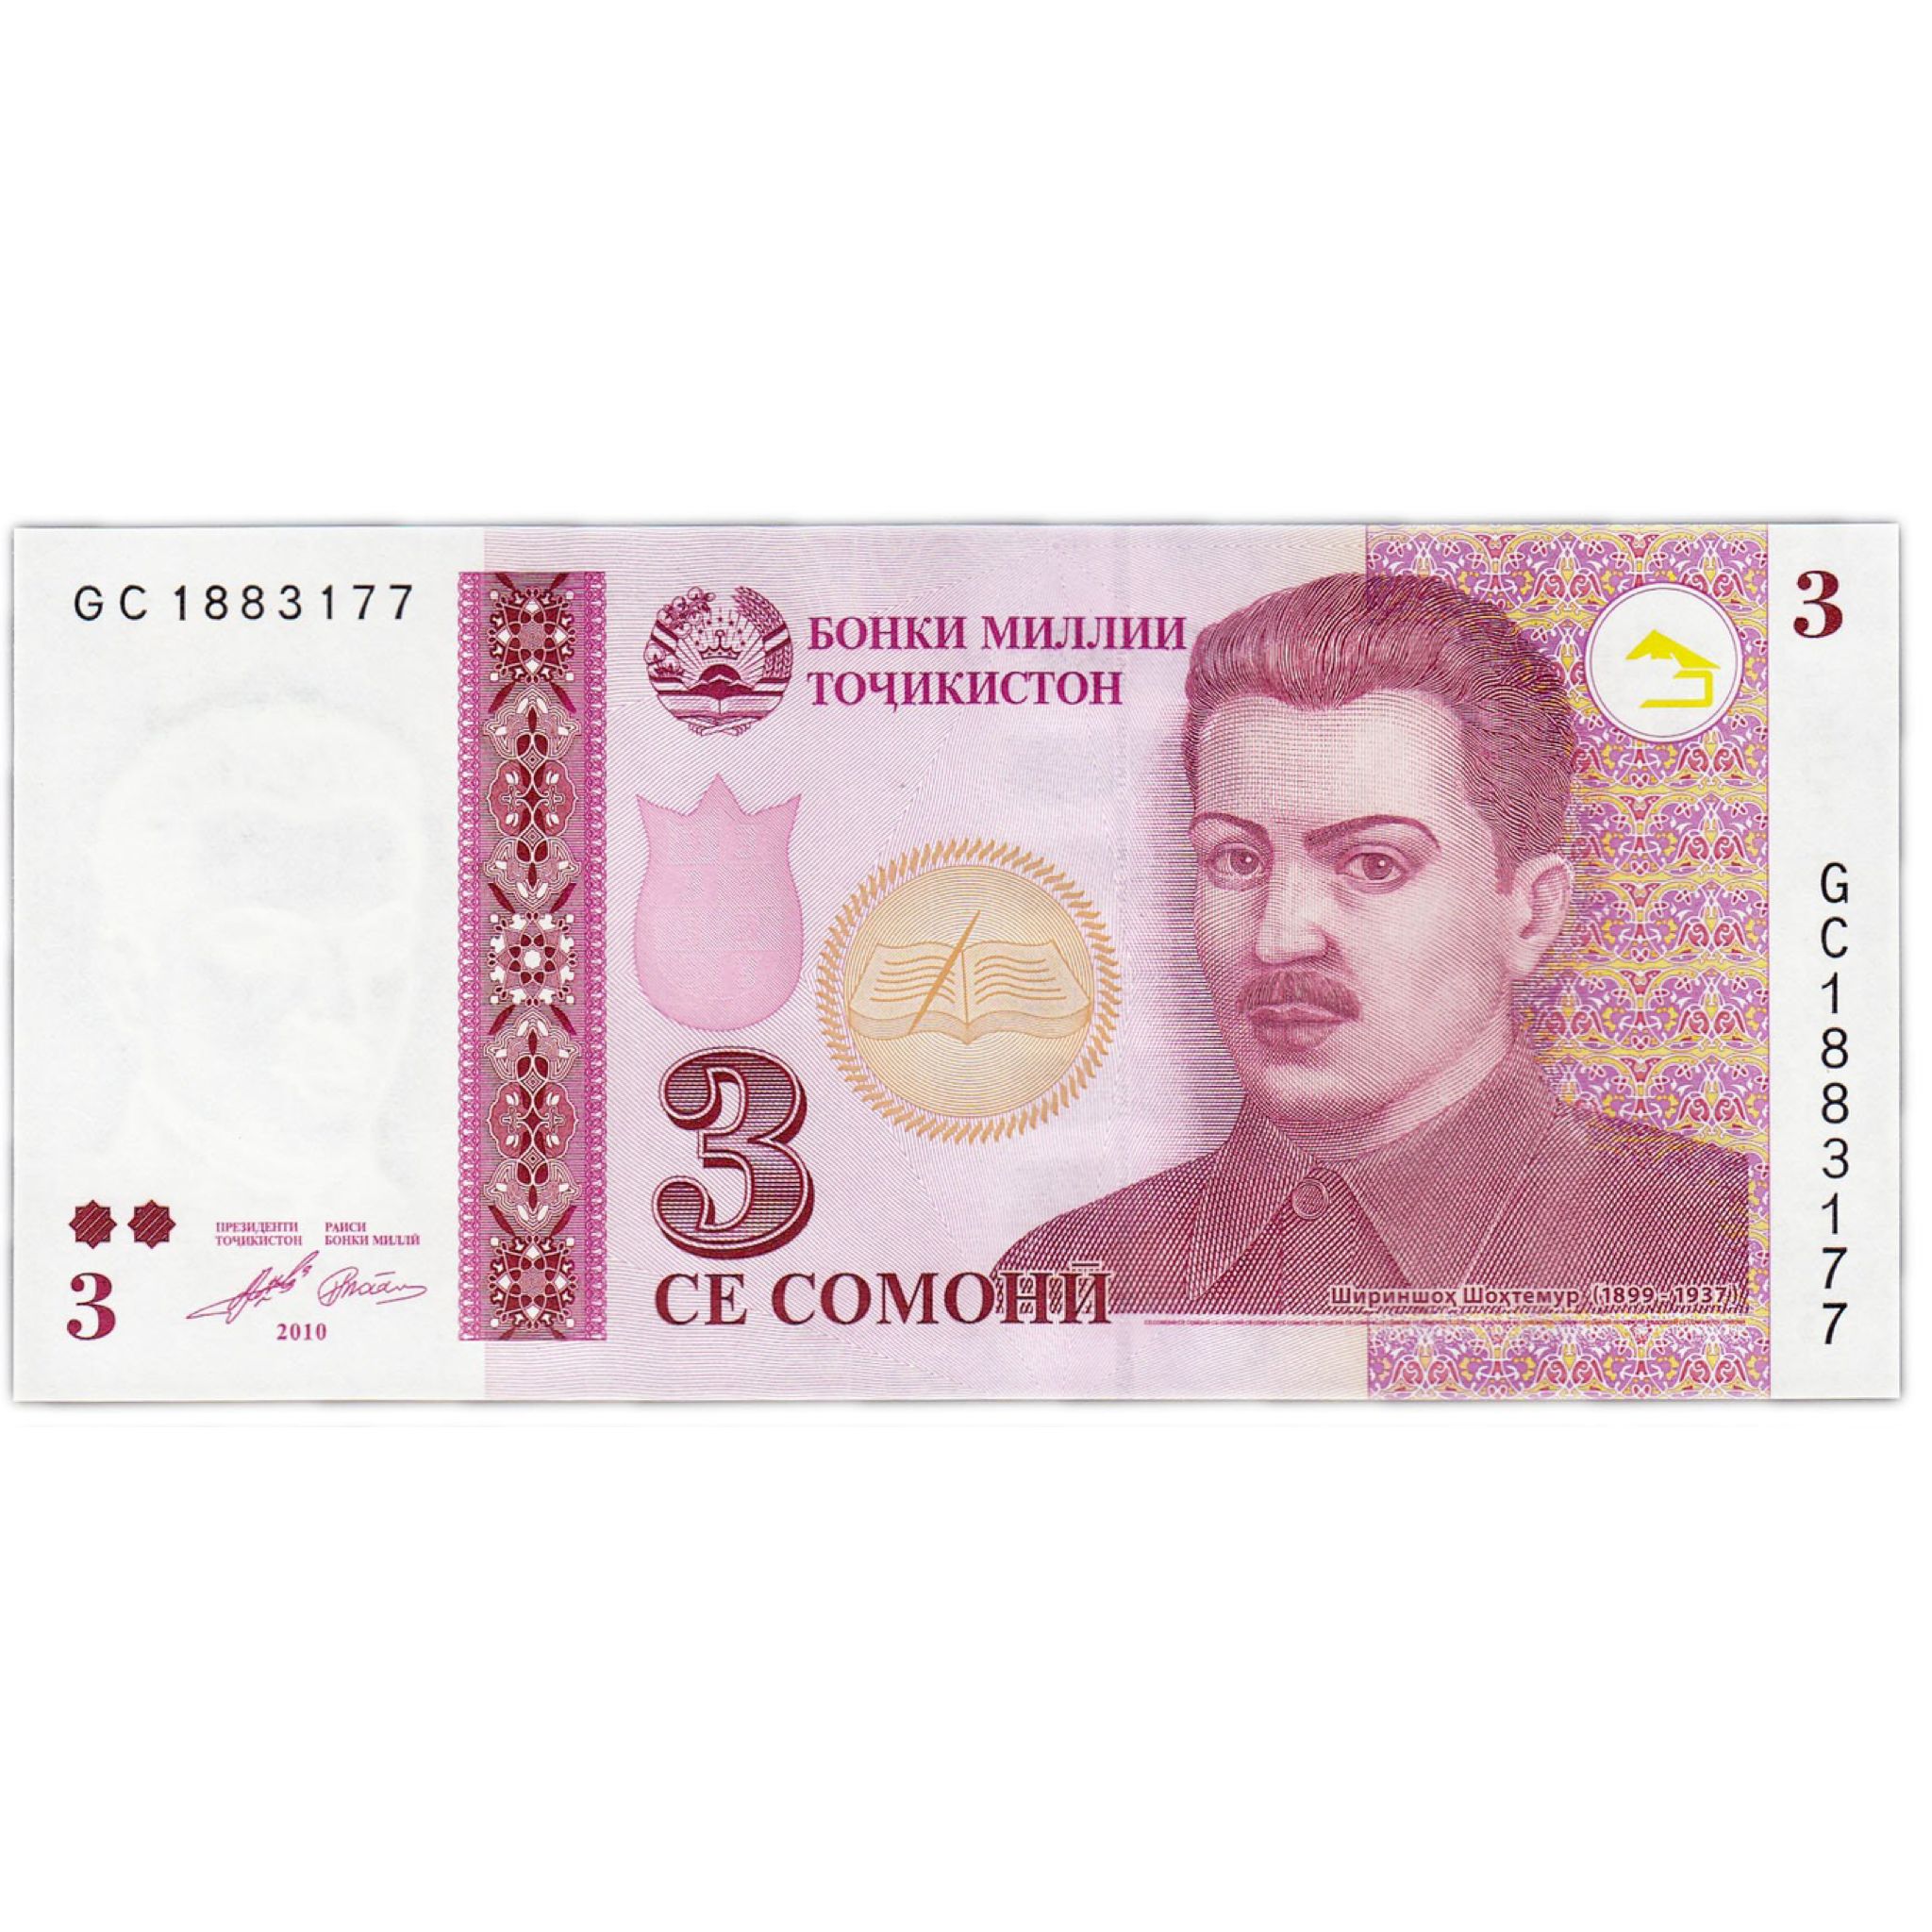 Мр3 таджикского. Деньги Таджикистана. Купюры Таджикистана. Таджикские банкноты. Денежные купюры Таджикистана.